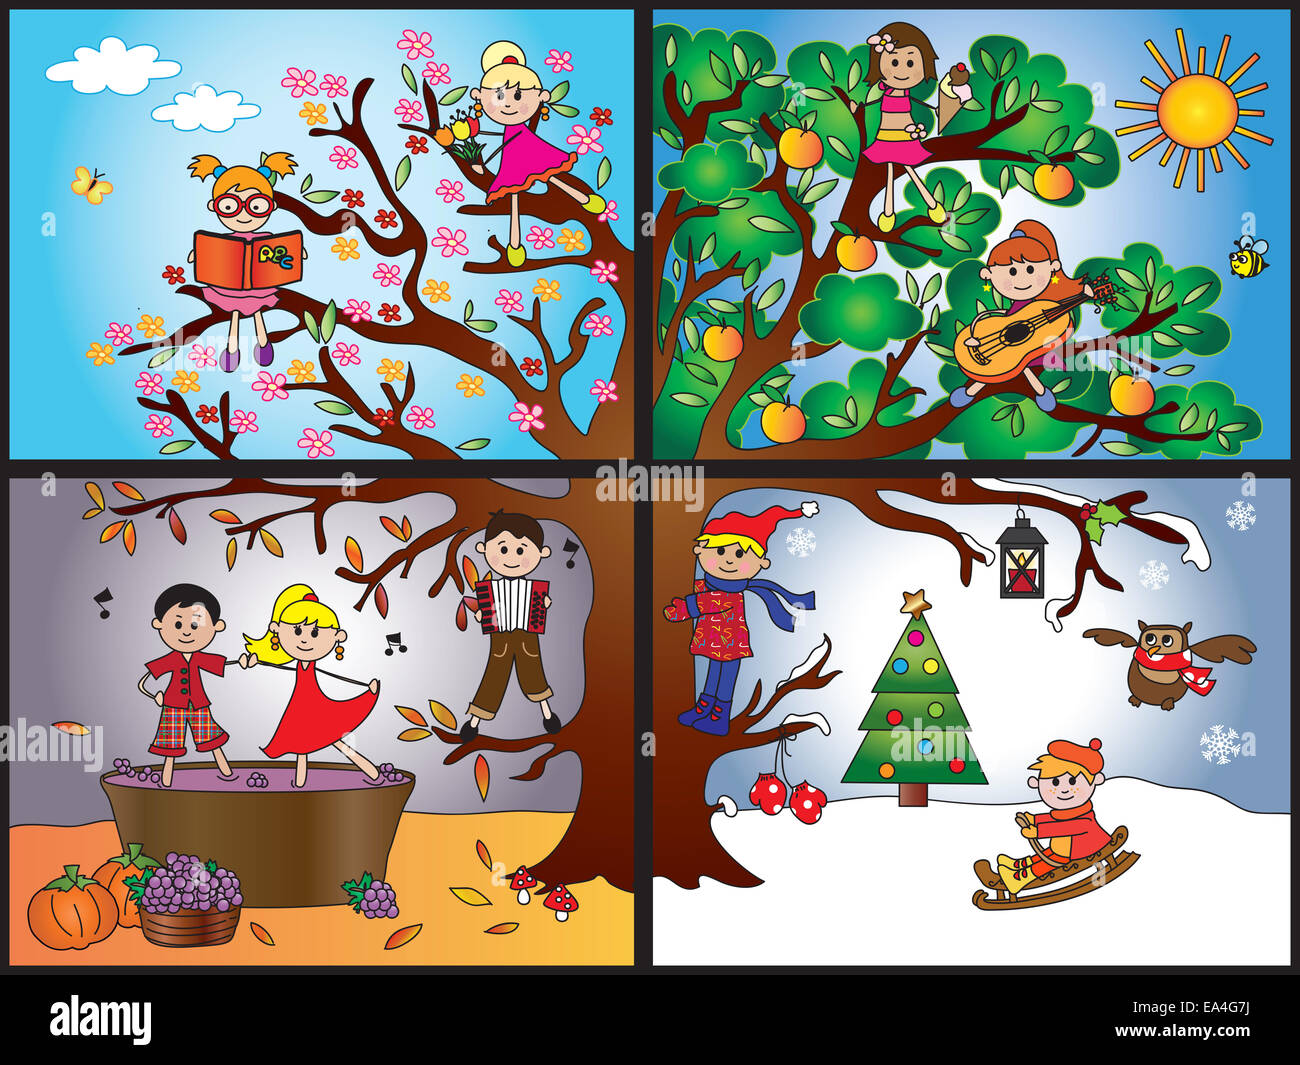 Illustration de l'arbre représente les quatre saisons : Printemps, Été, Automne, hiver. Banque D'Images